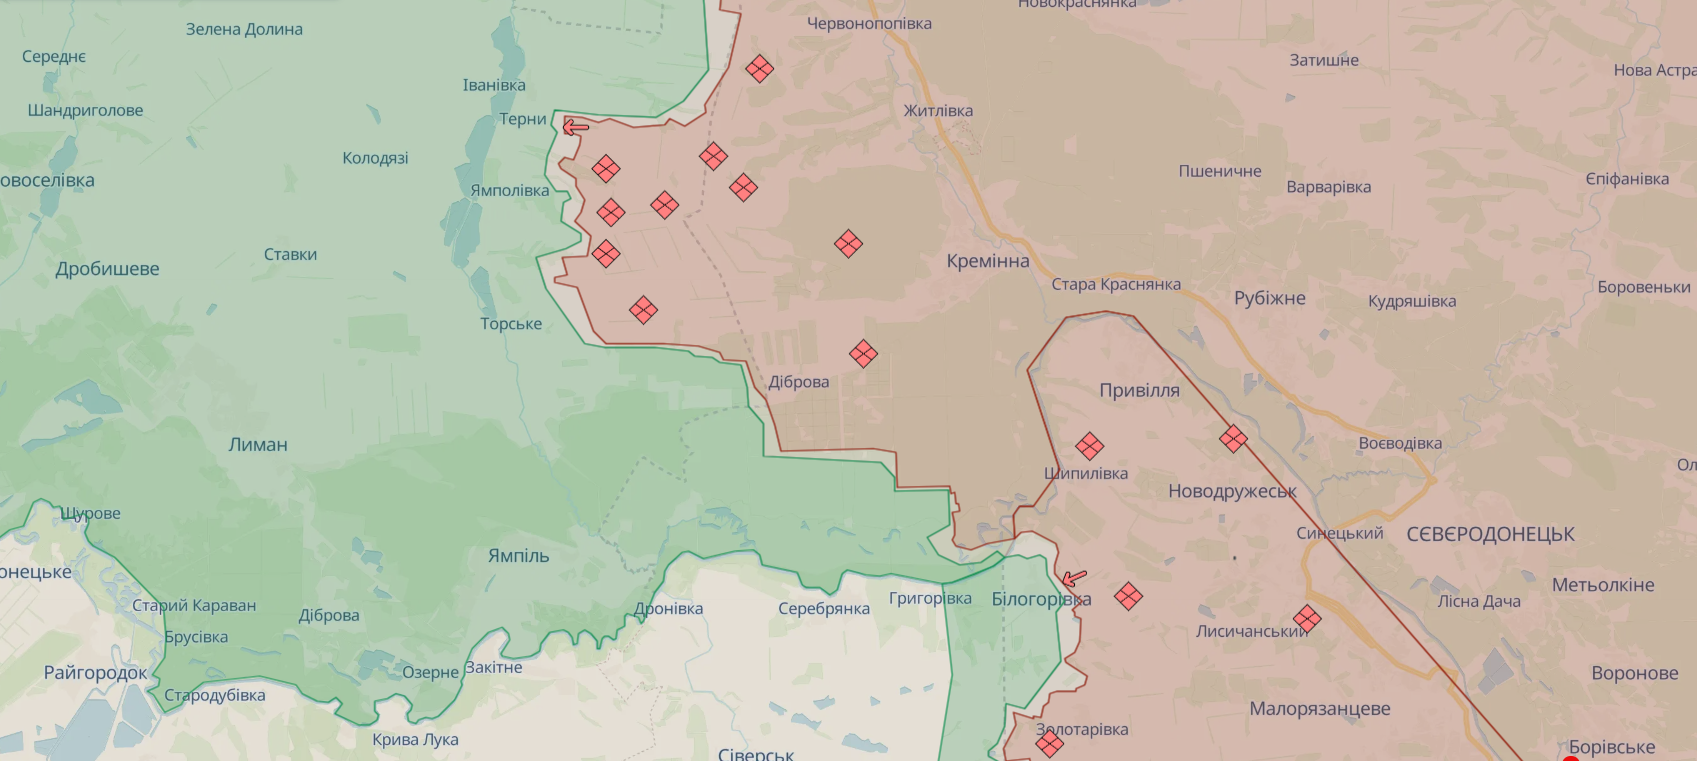 Ukraińskie Siły Zbrojne odepchnęły wroga w kierunku Pokrowska i próbują ustabilizować sytuację - Sztab Generalny